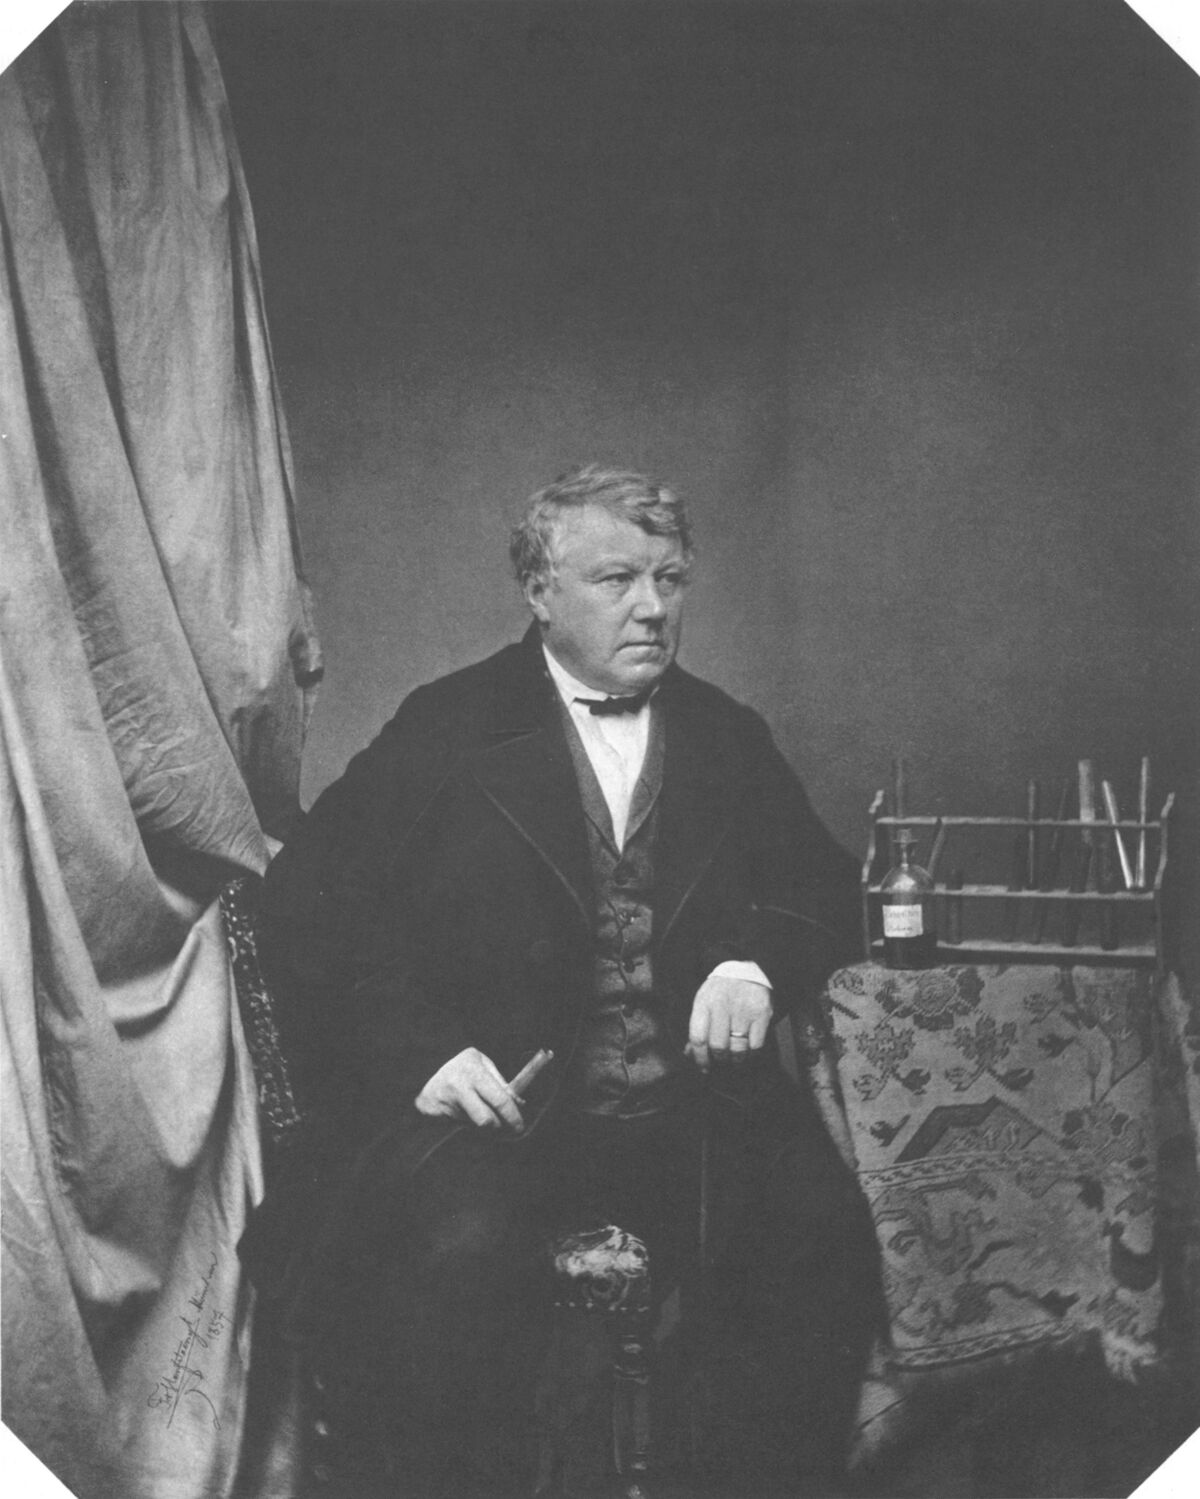 GFD 1/143: Christian Friedrich Schönbein (Fotografie von Franz Hanfstaengl, 1857)